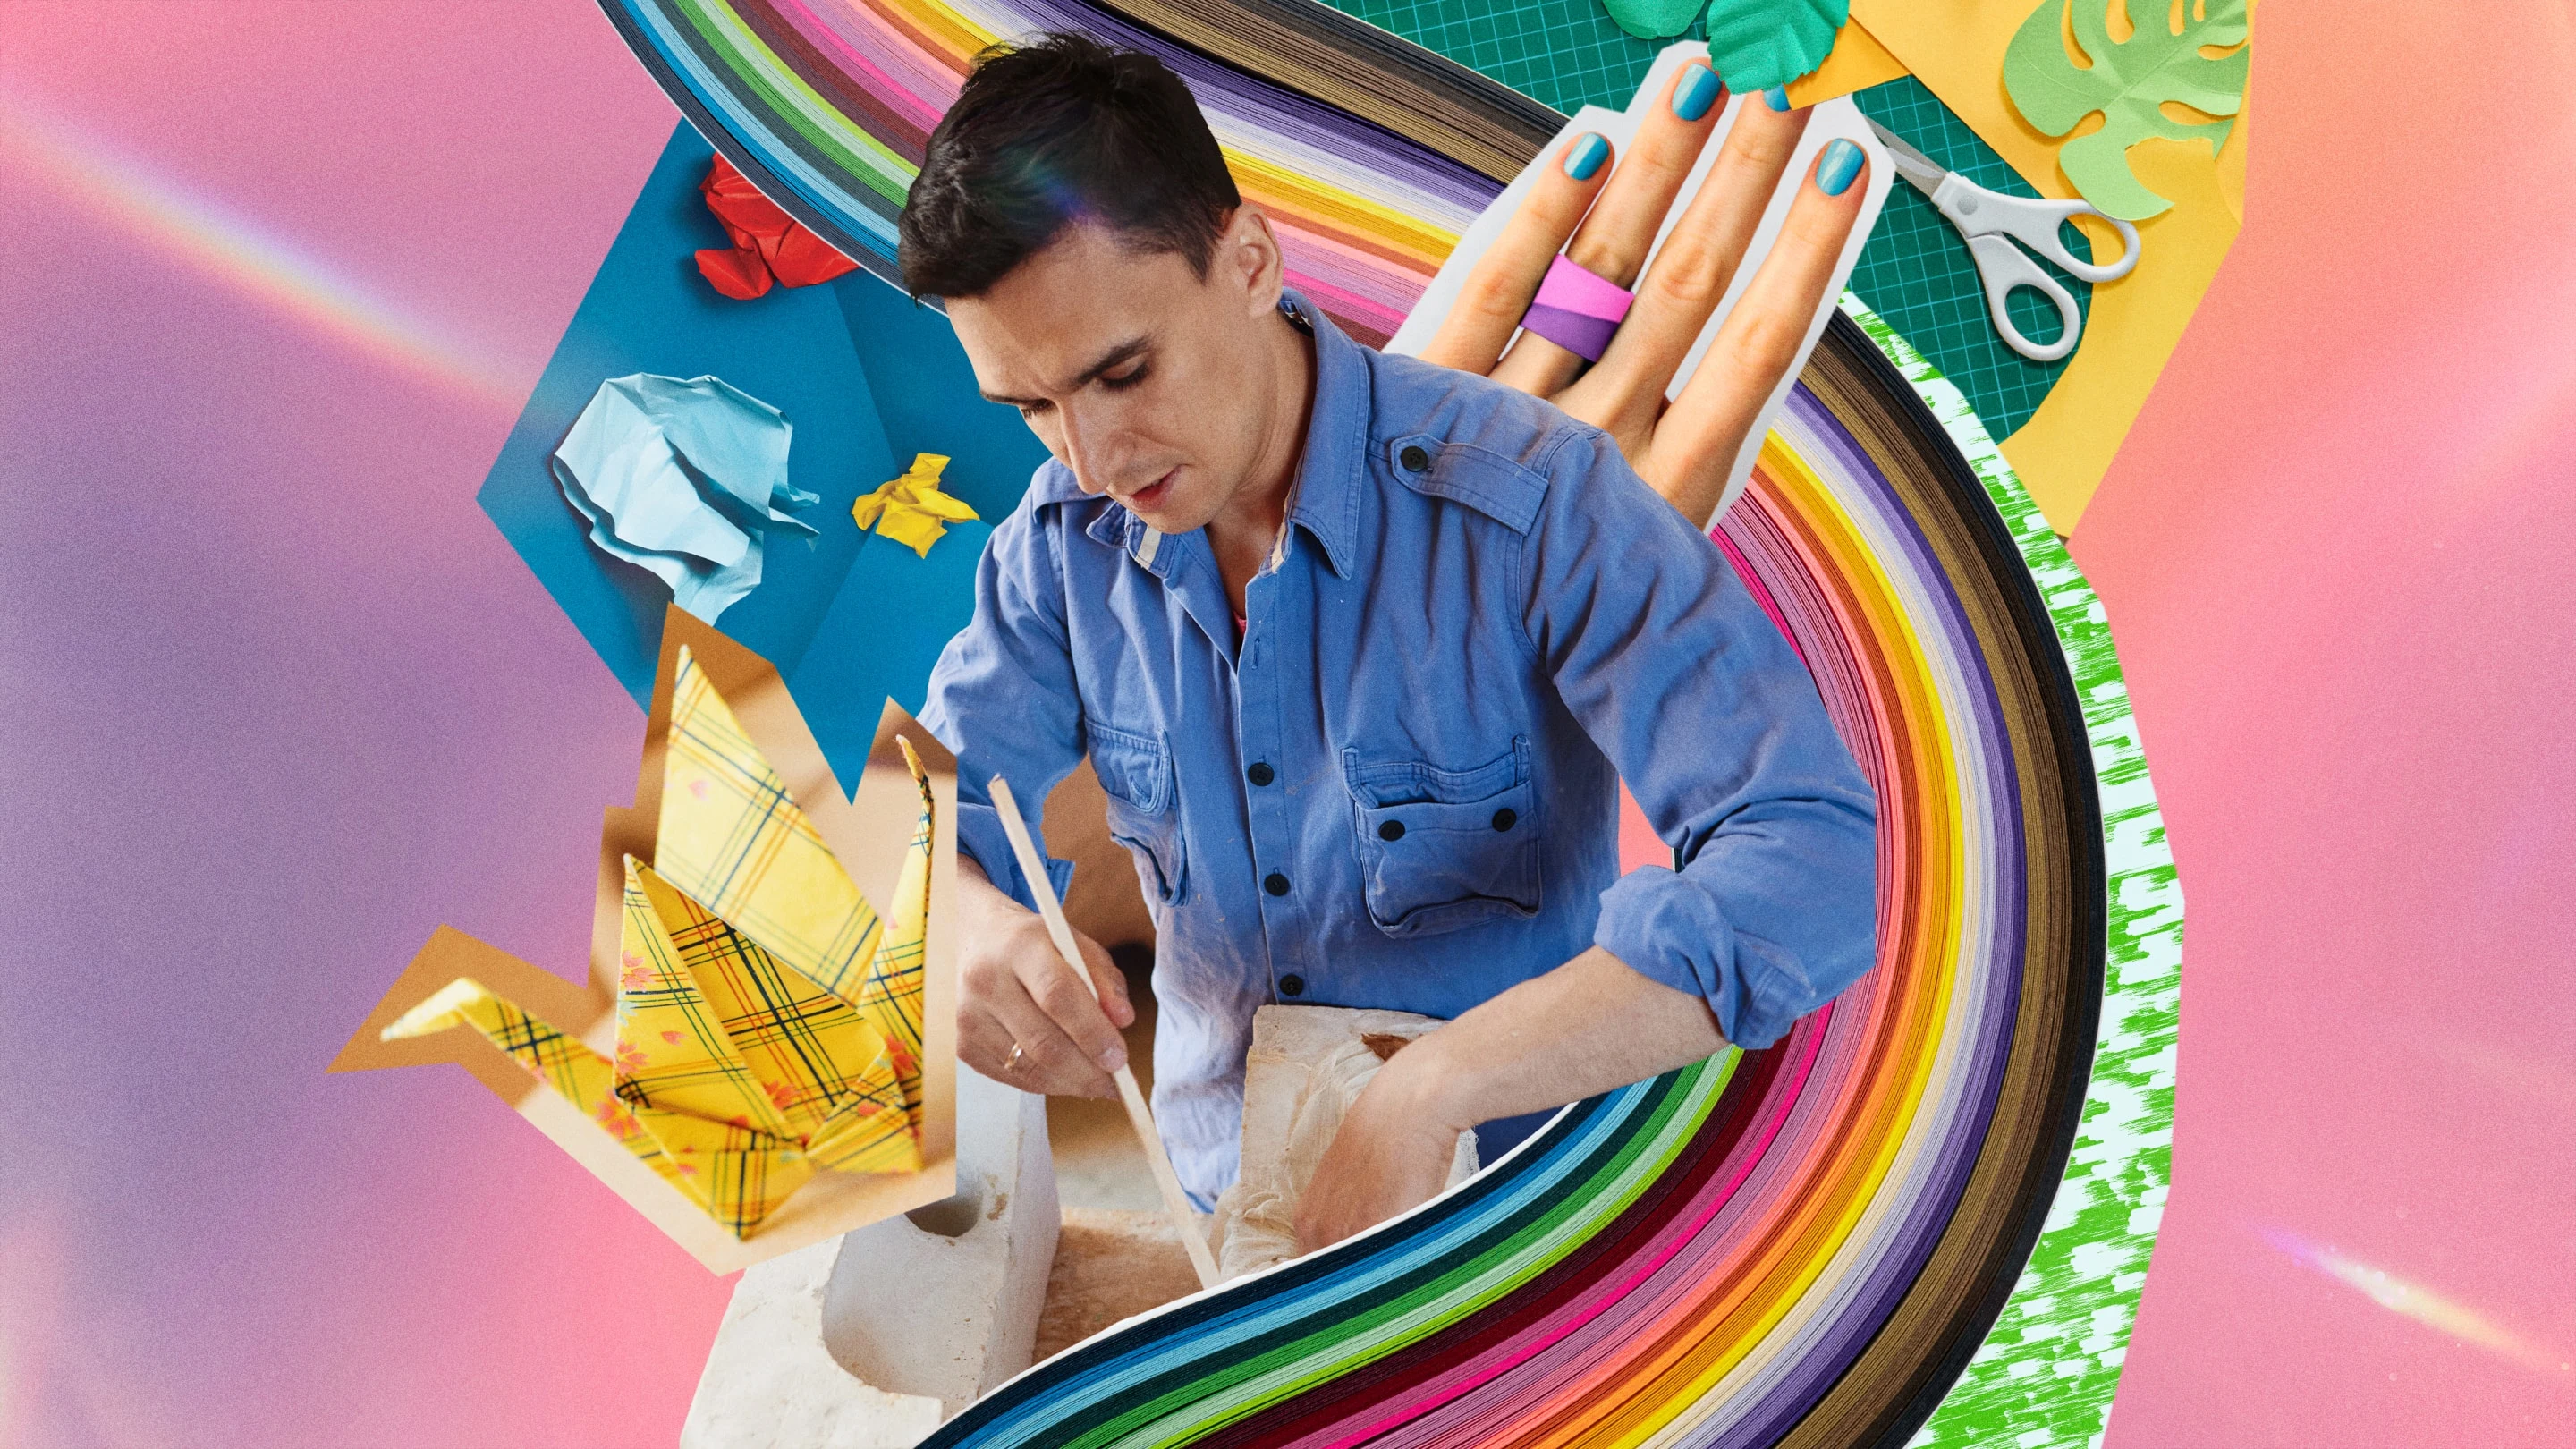 Immagini che raffigurano un uomo bianco impegnato in un lavoro manuale, un arcobaleno di carta colorata, forbici, una mano che indossa un anello di carta e pezzi di origami.